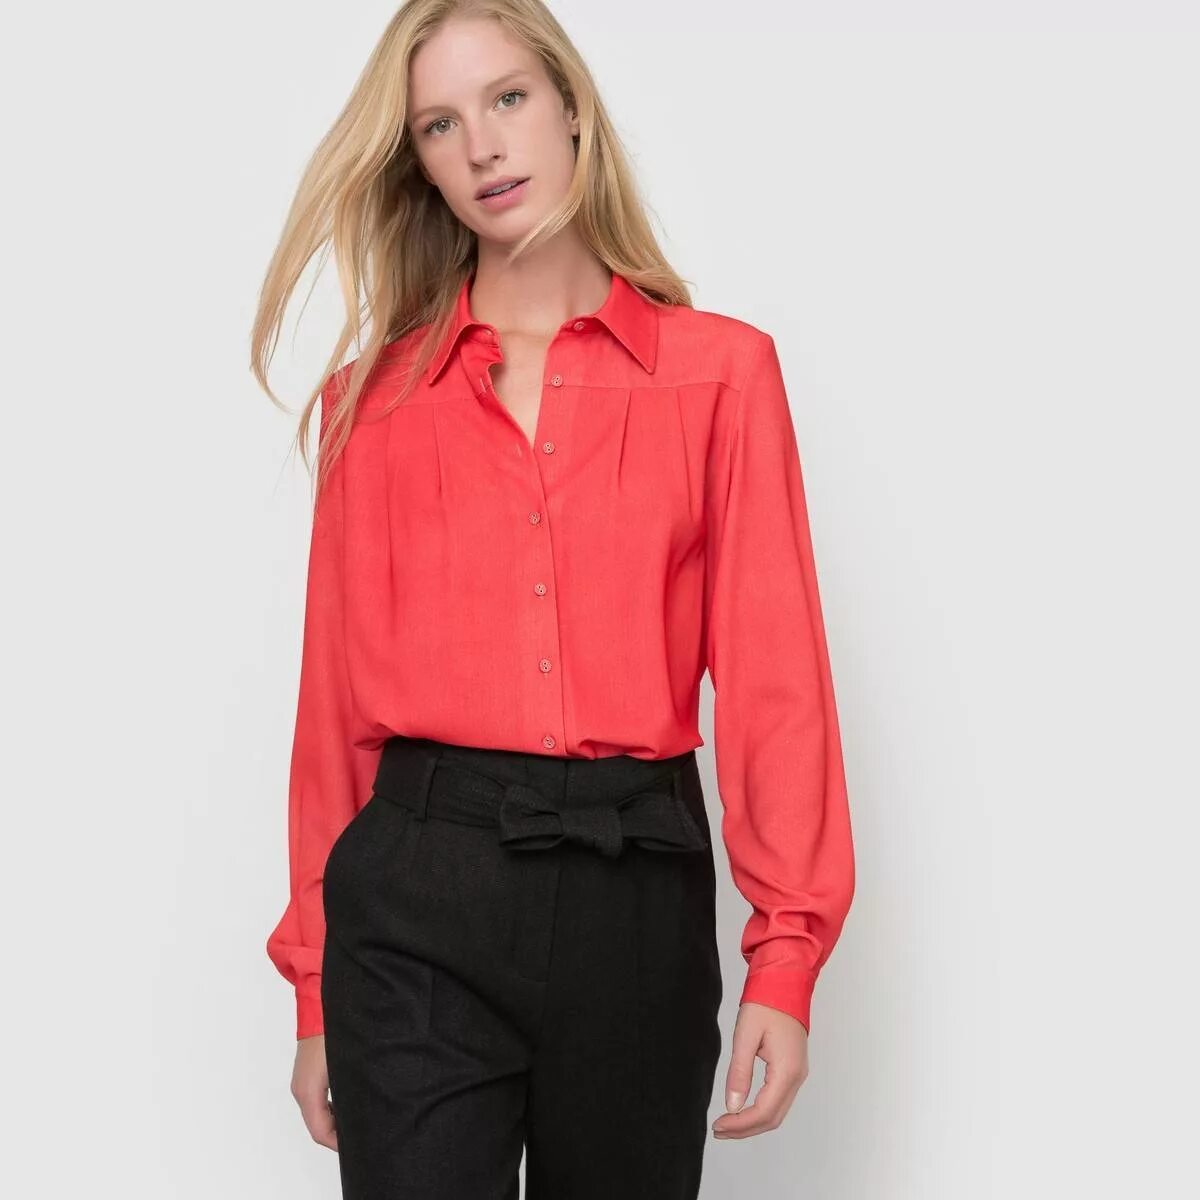 Легкая рубашка. Красная рубашка женская. Рубашка легкая с длинным рукавом.